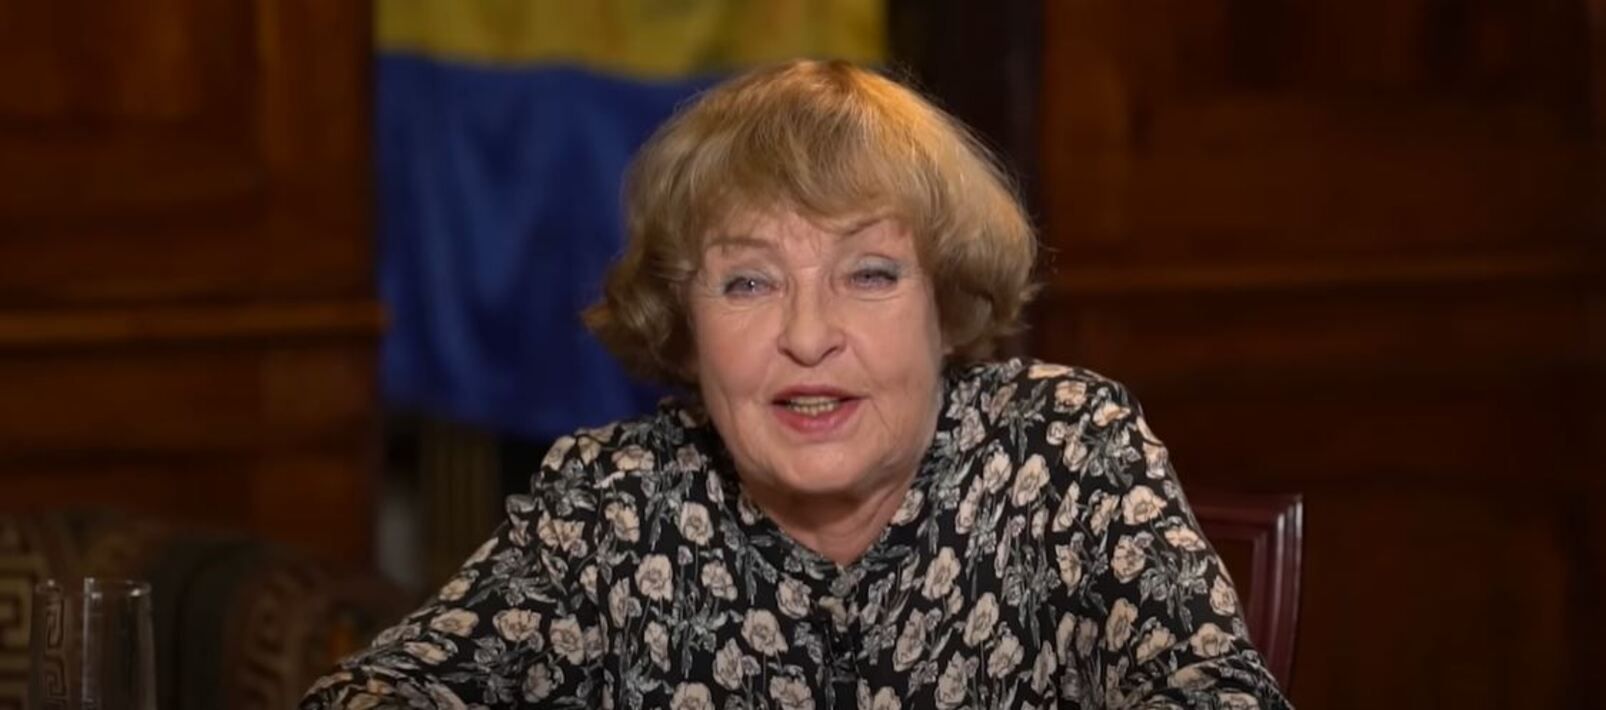 Ада Роговцева 60 лет работала в Росии – как на это реагируют украинцы